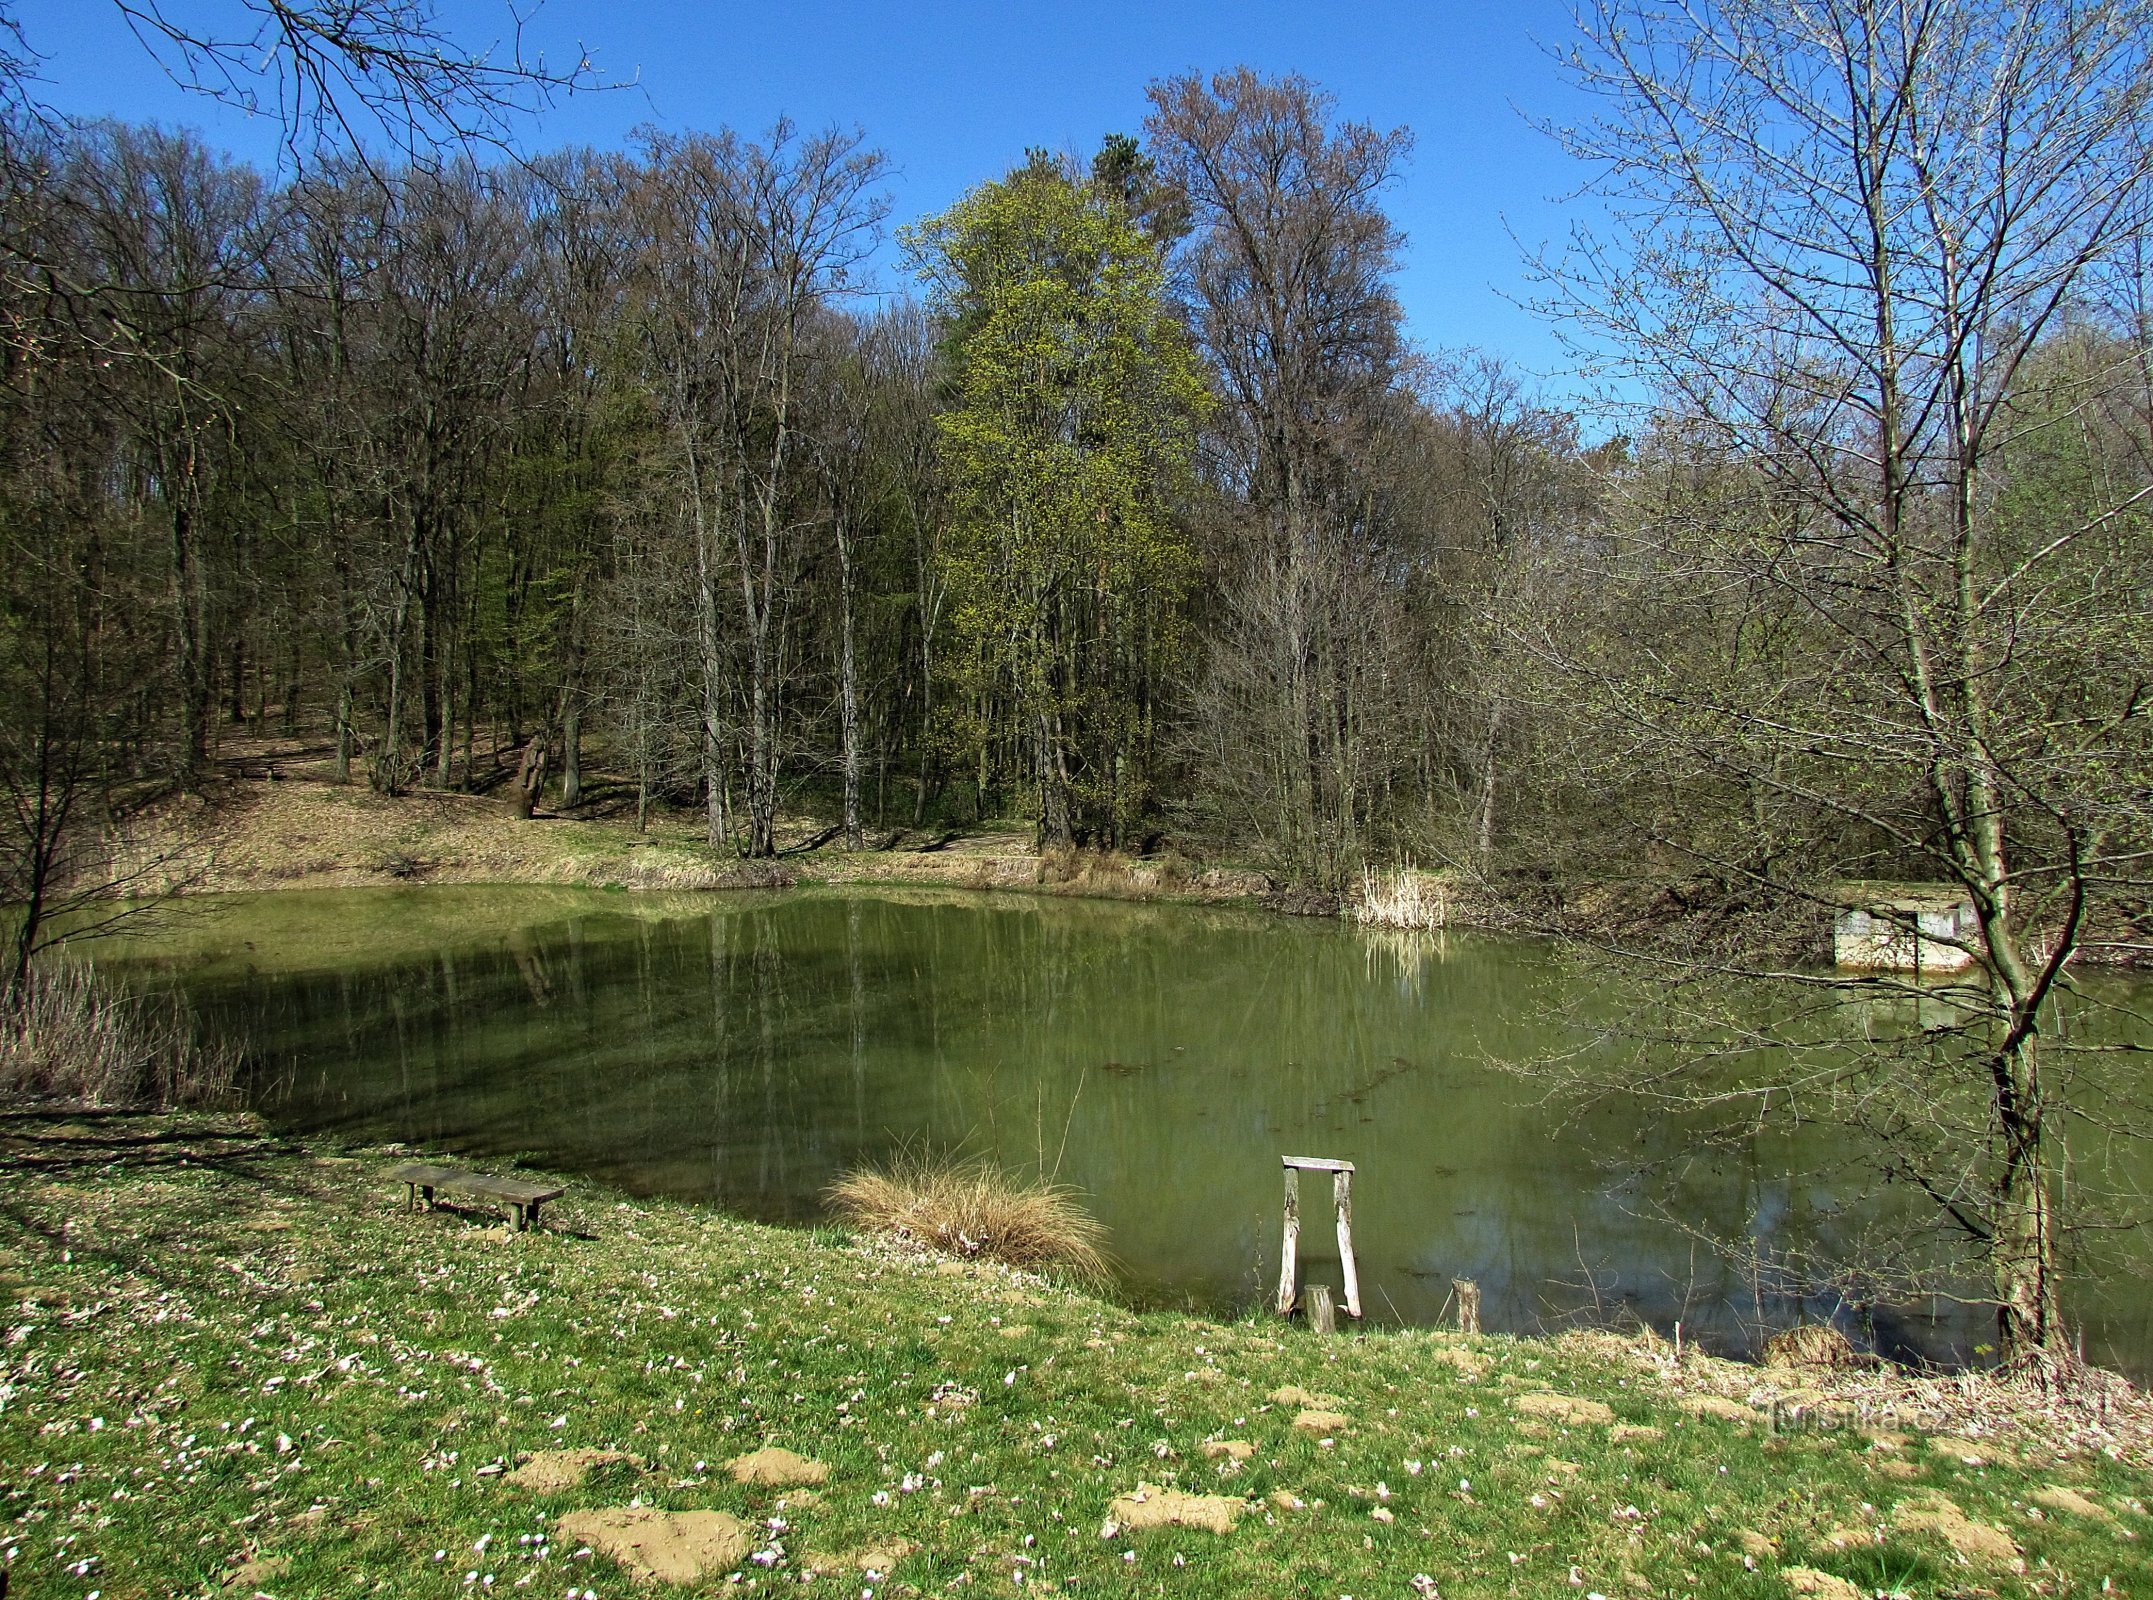 Vázany - forest pond